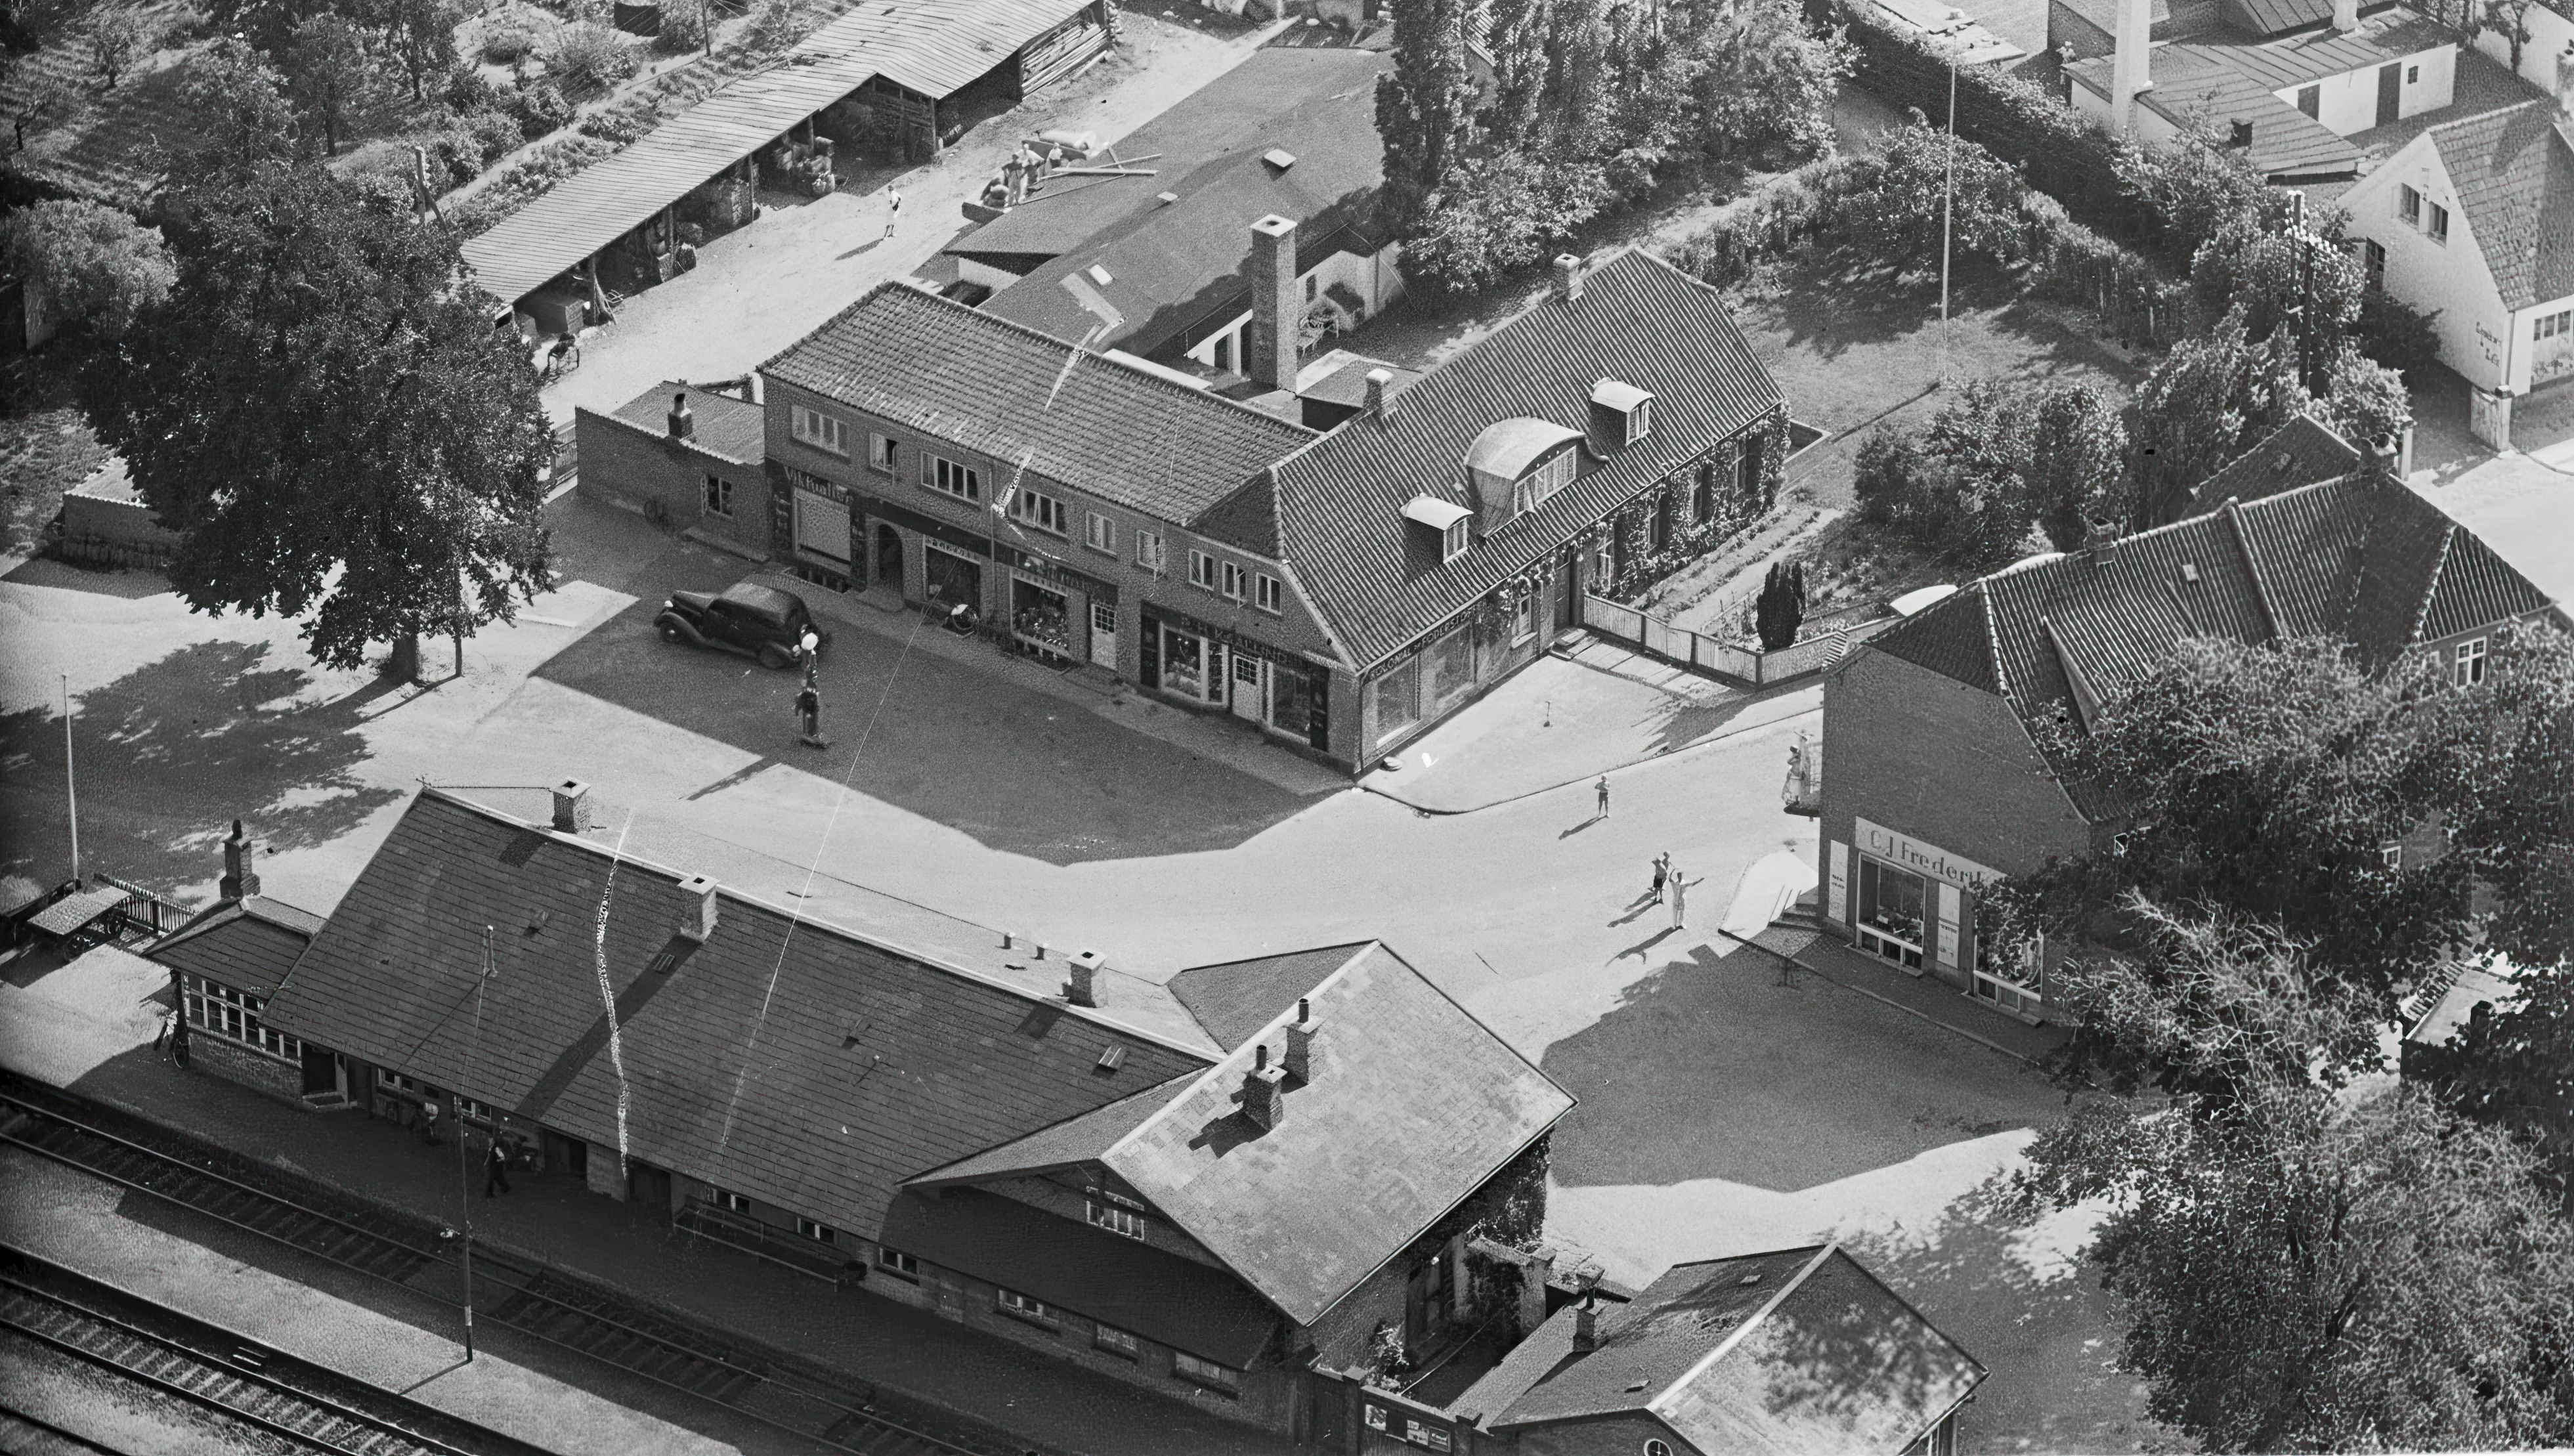 Billede af Svebølle Station.